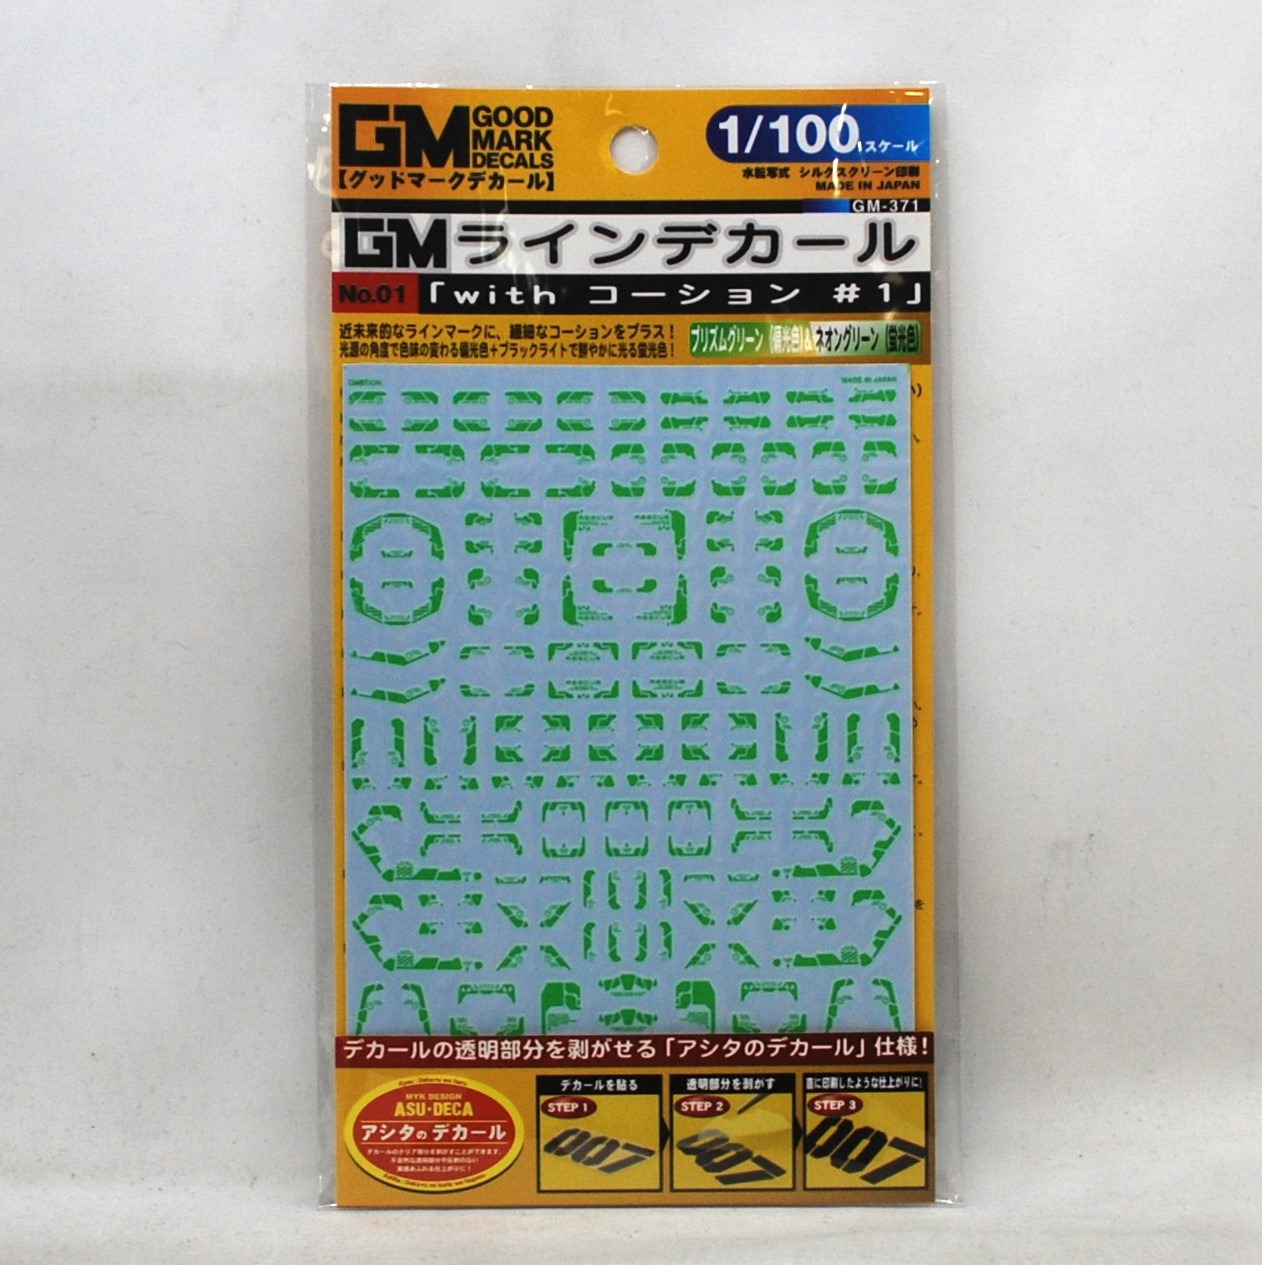 アシタのデカール GM-371 1/100 GM ラインデカール No.1｢with コーション｣#1プリズムグリーン & ネオングリーン